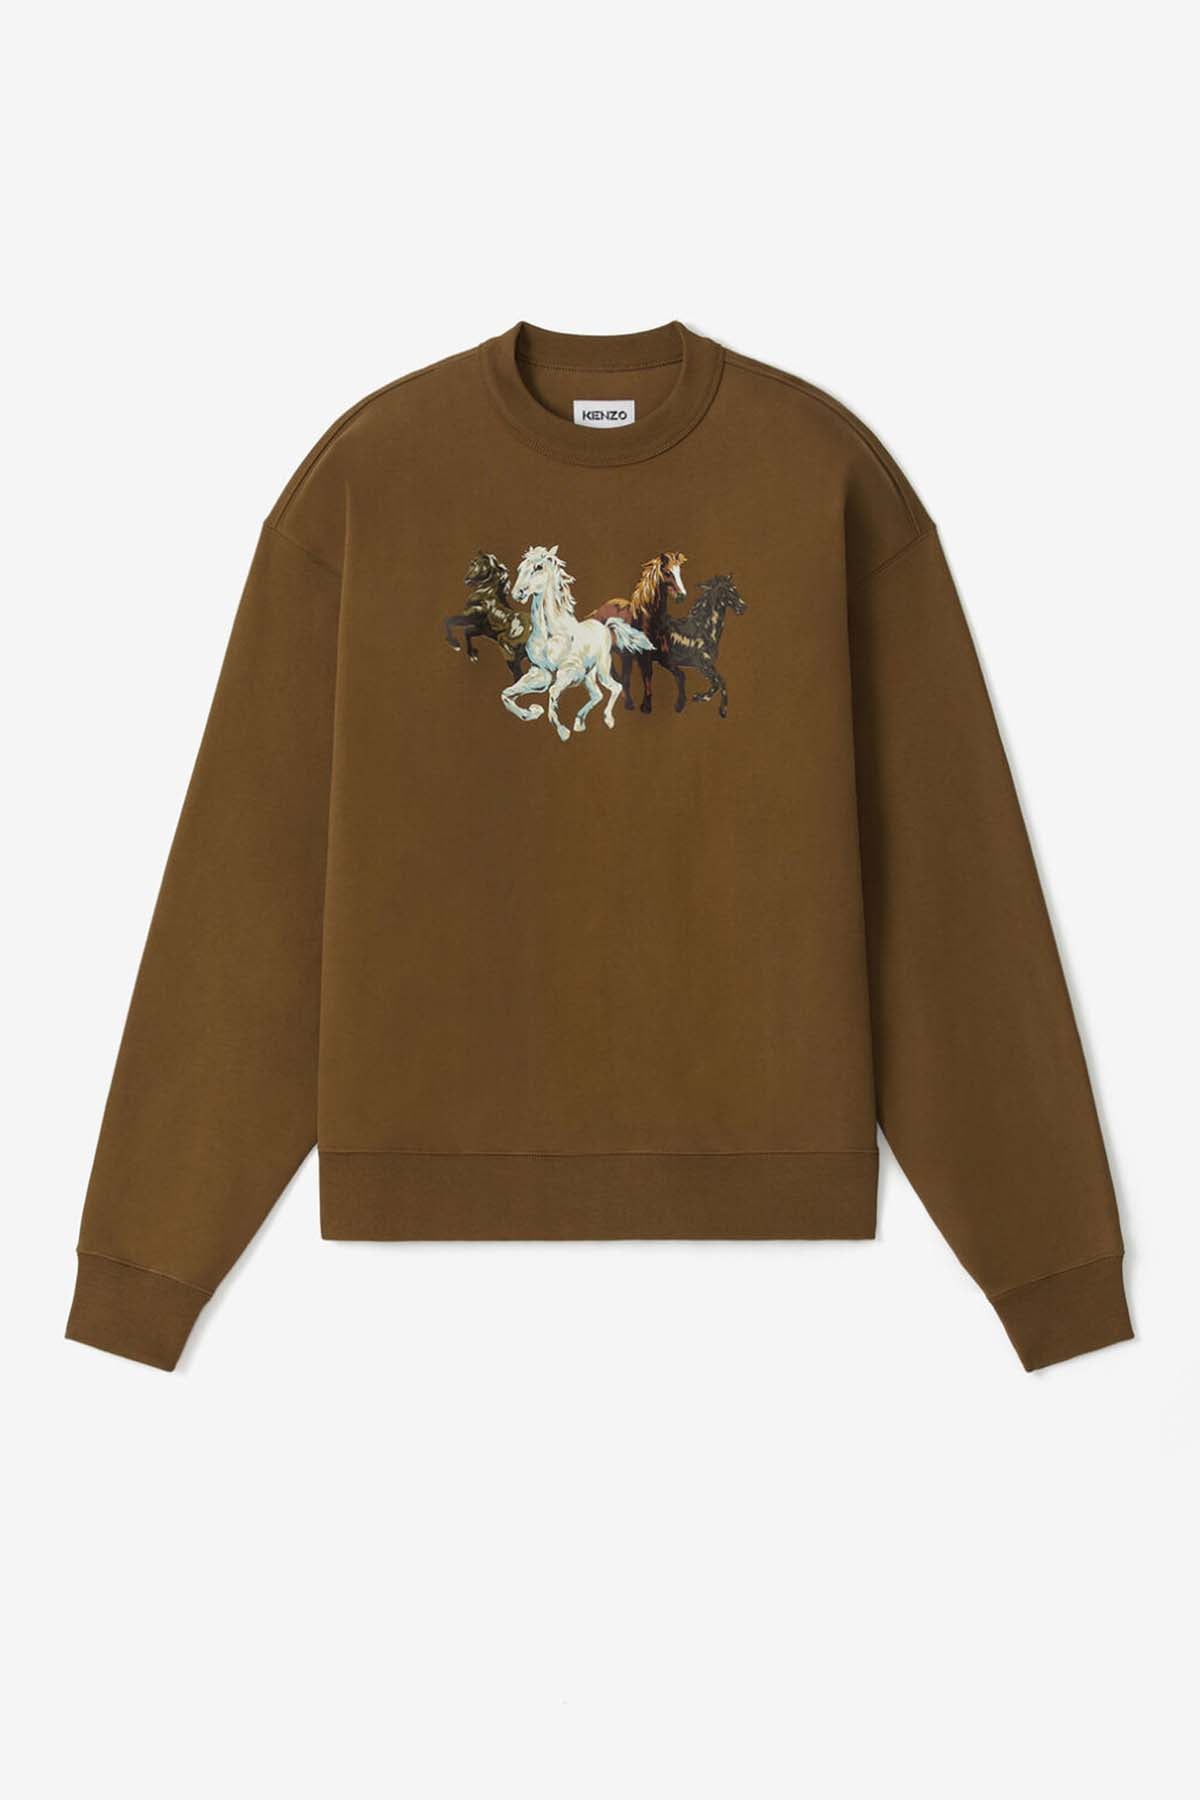 Kenzo Horses Sweatshirt-Libas Trendy Fashion Store